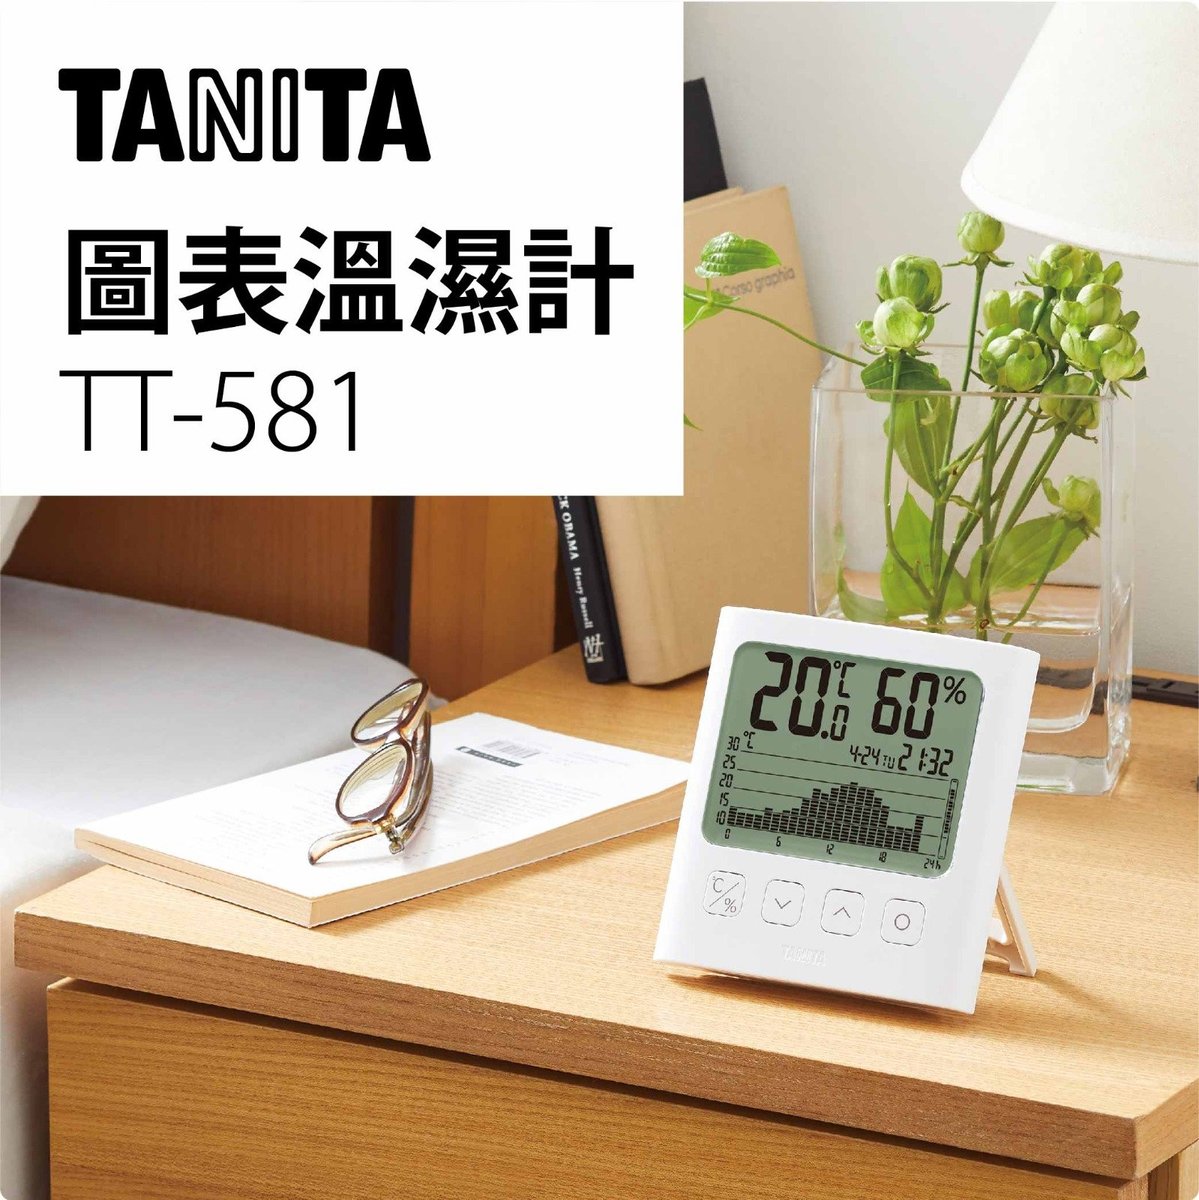 TT-581 日本電子圖表溫濕度計 (24小時圖表顯示)(日系, 溫度, 濕度, 抽濕, 防潮, 乾燥, 全屋門口, 玄關, 臥室, 家用, 客廳, 時尚現代簡約, 行貨) 4 904785 5581